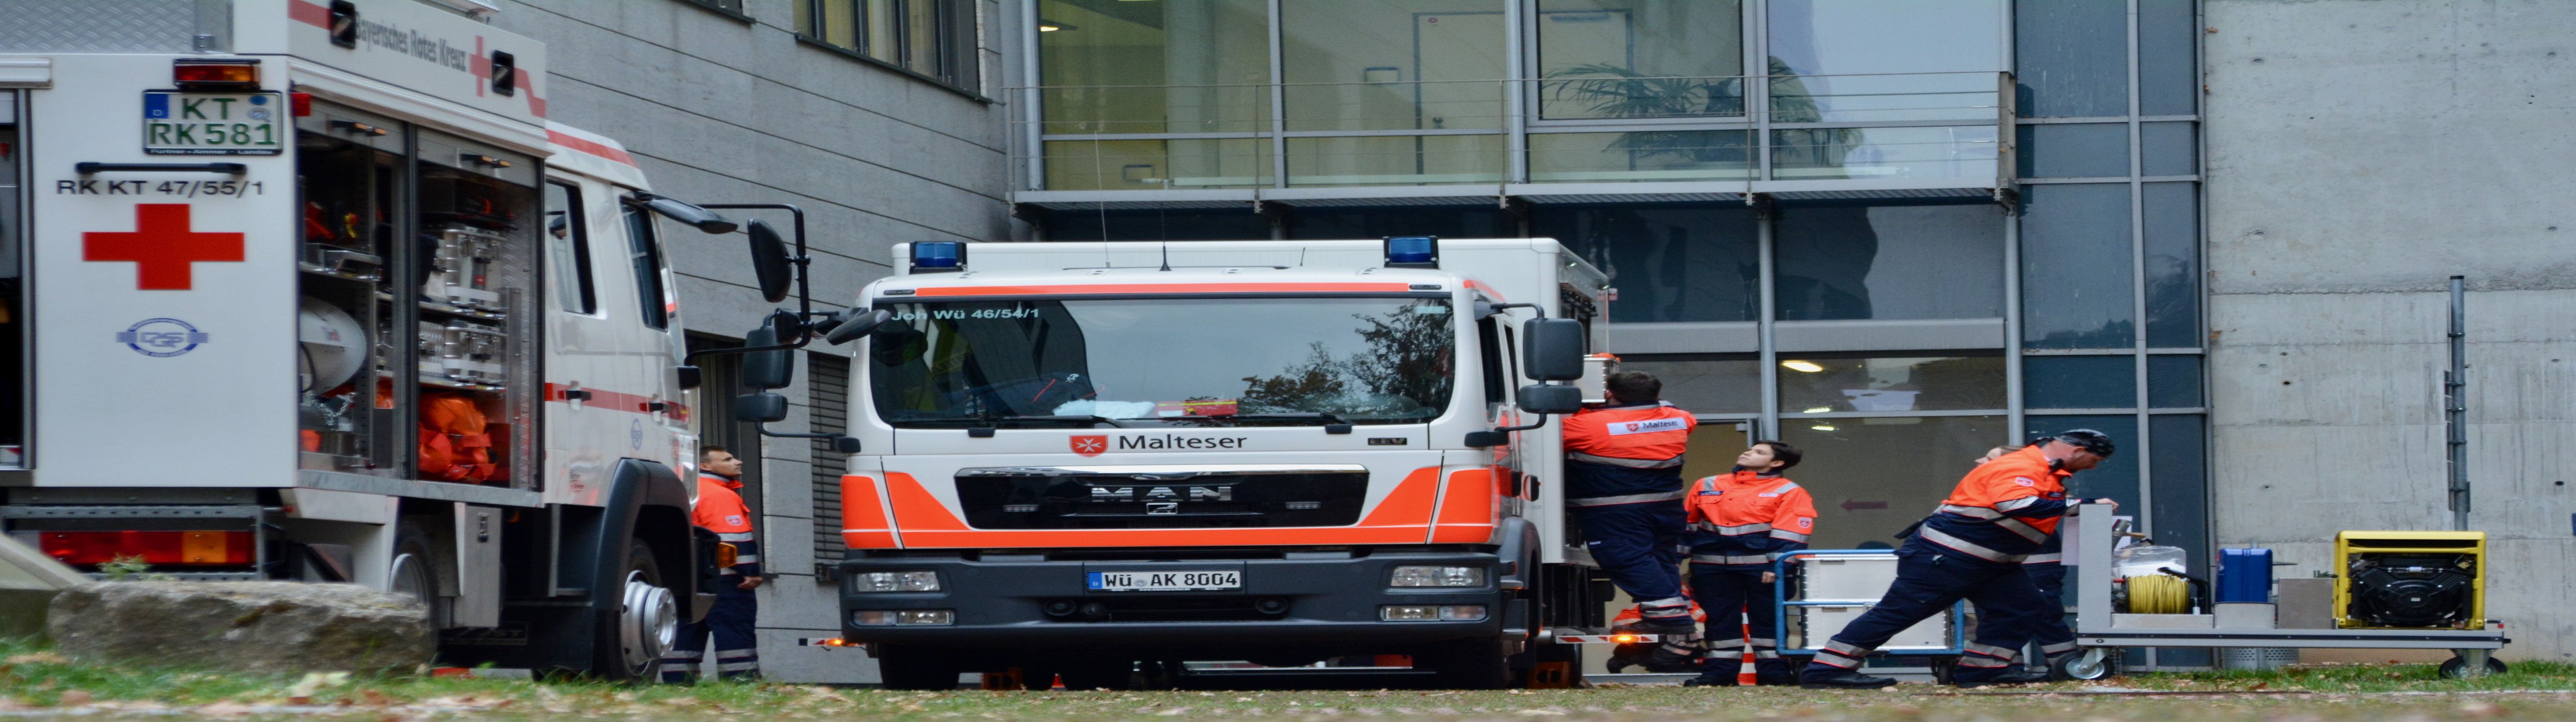 Einsatzkräfte des Bayerischen Roten Kreuzes, der Johanniter-Unfall-Hilfe und des Malteser Hilfsdienstes 